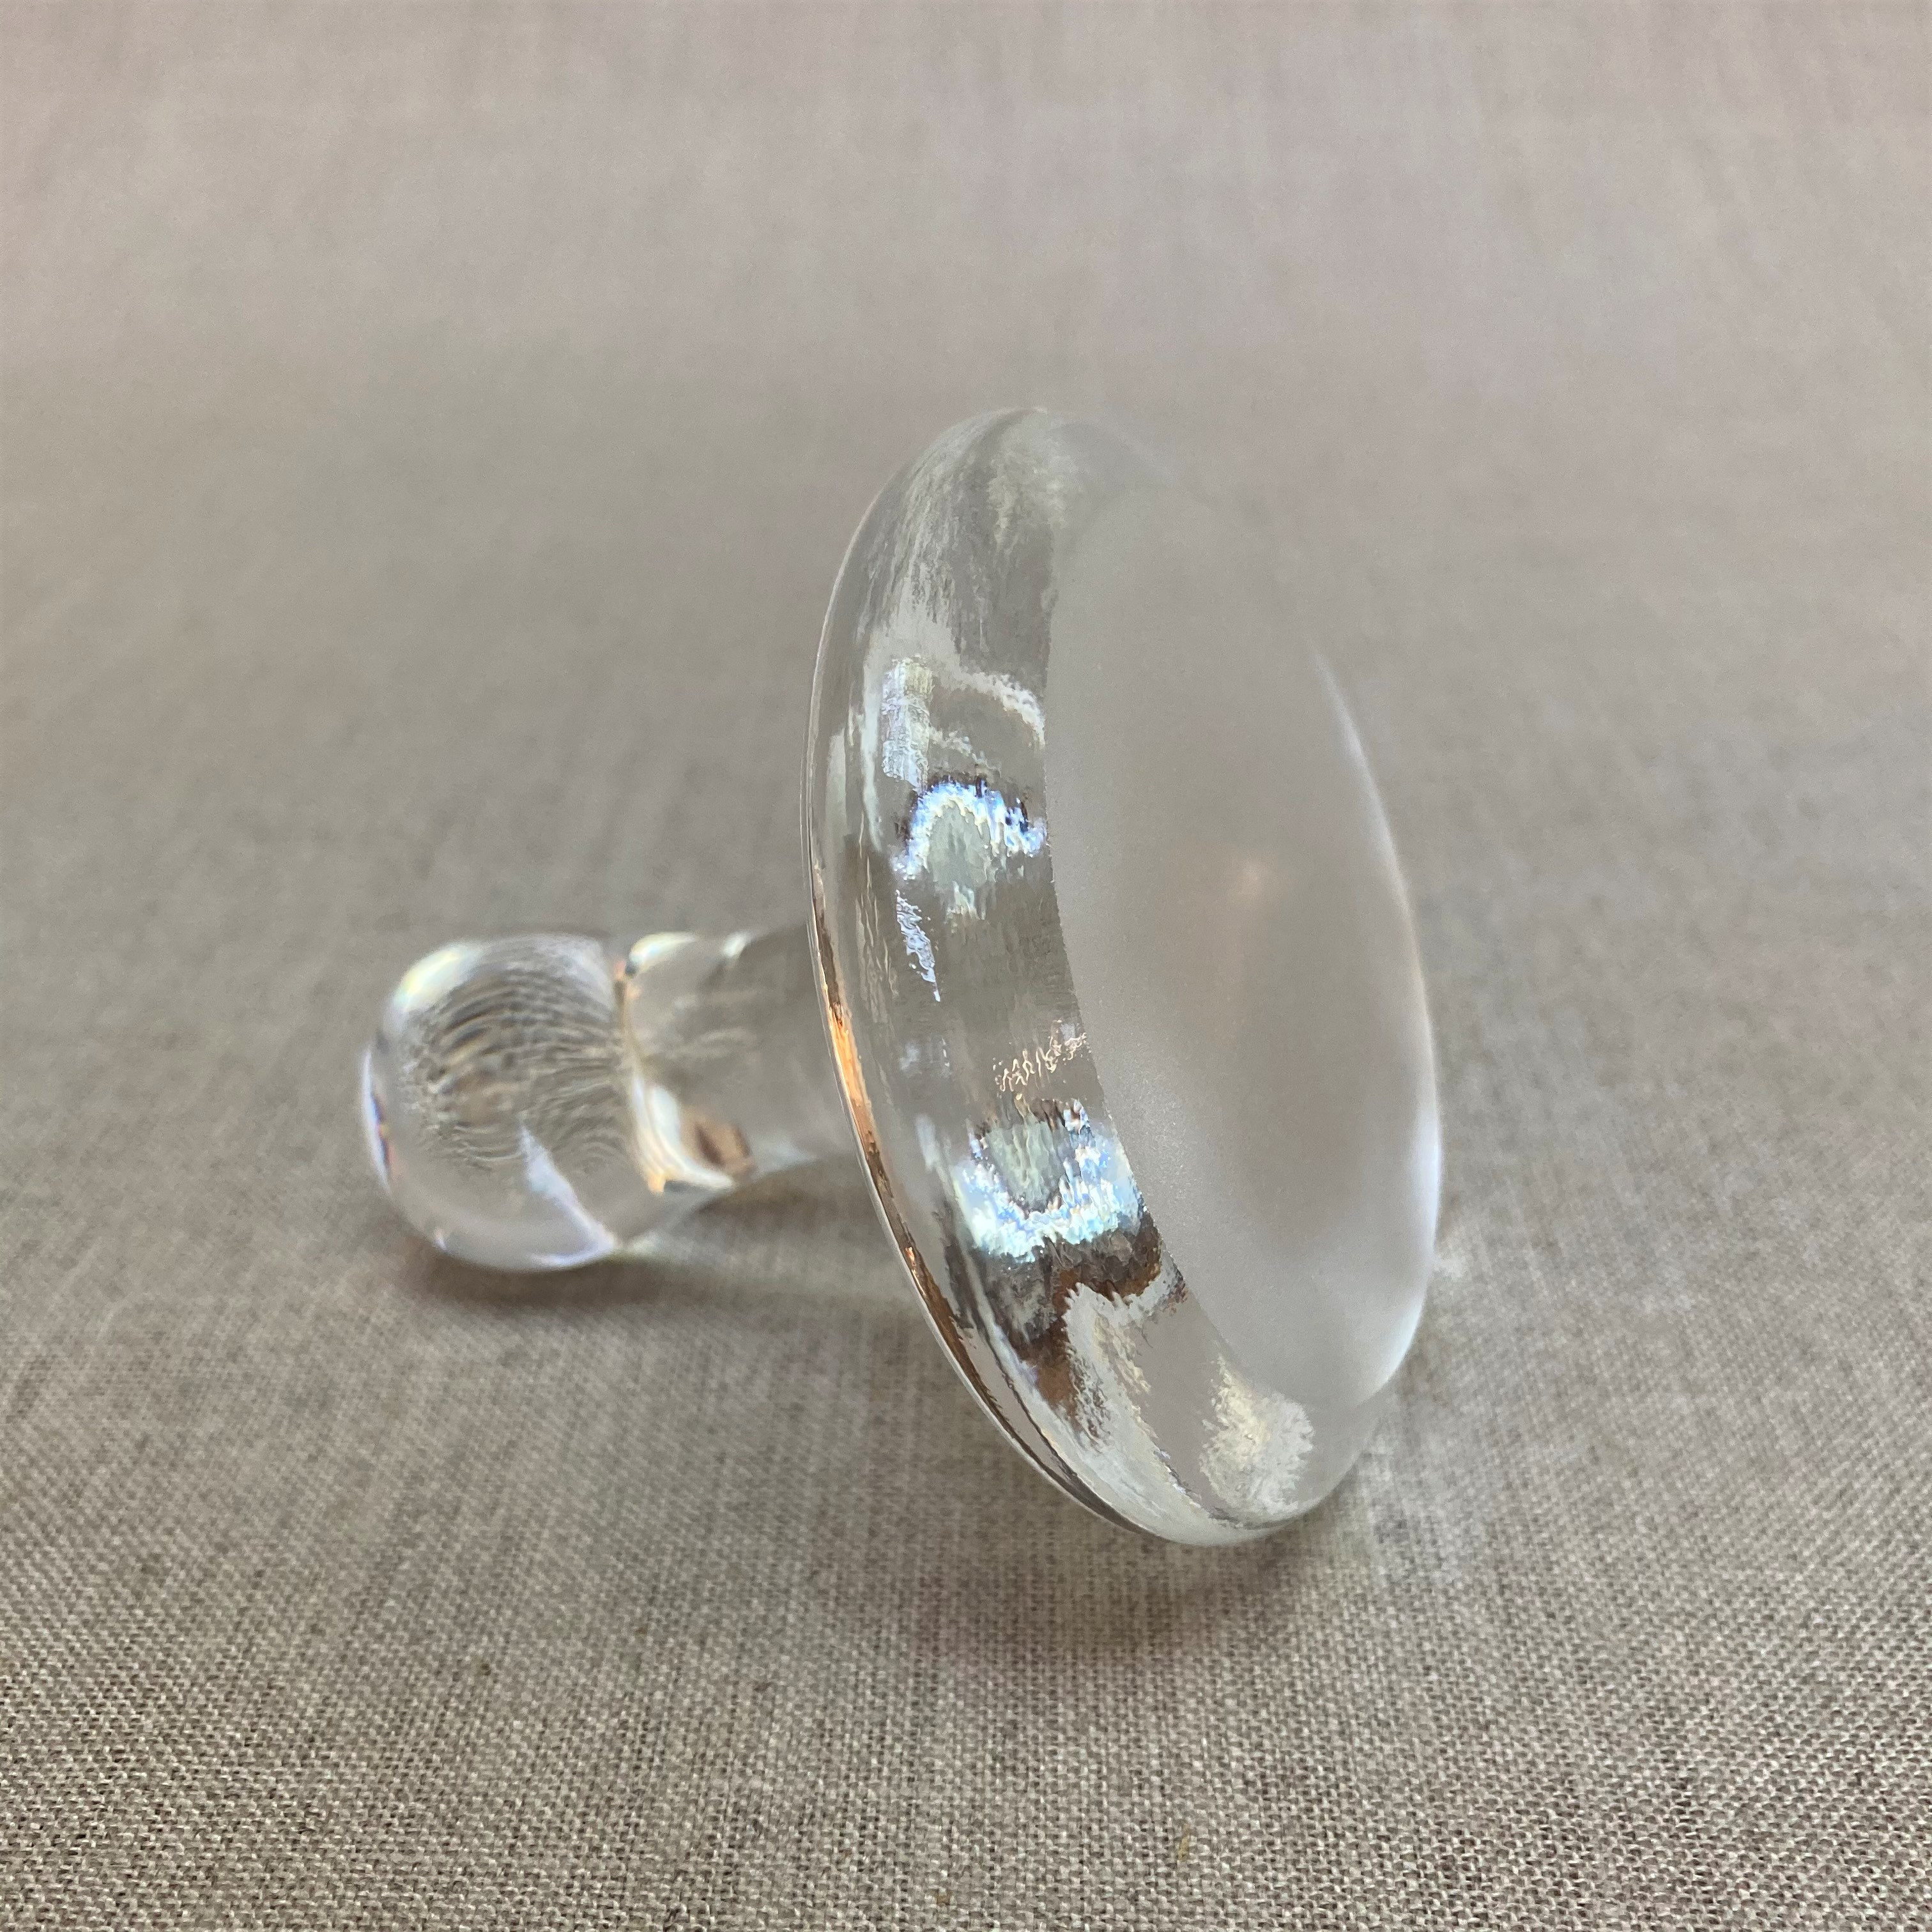 Glass Muller - 10cm